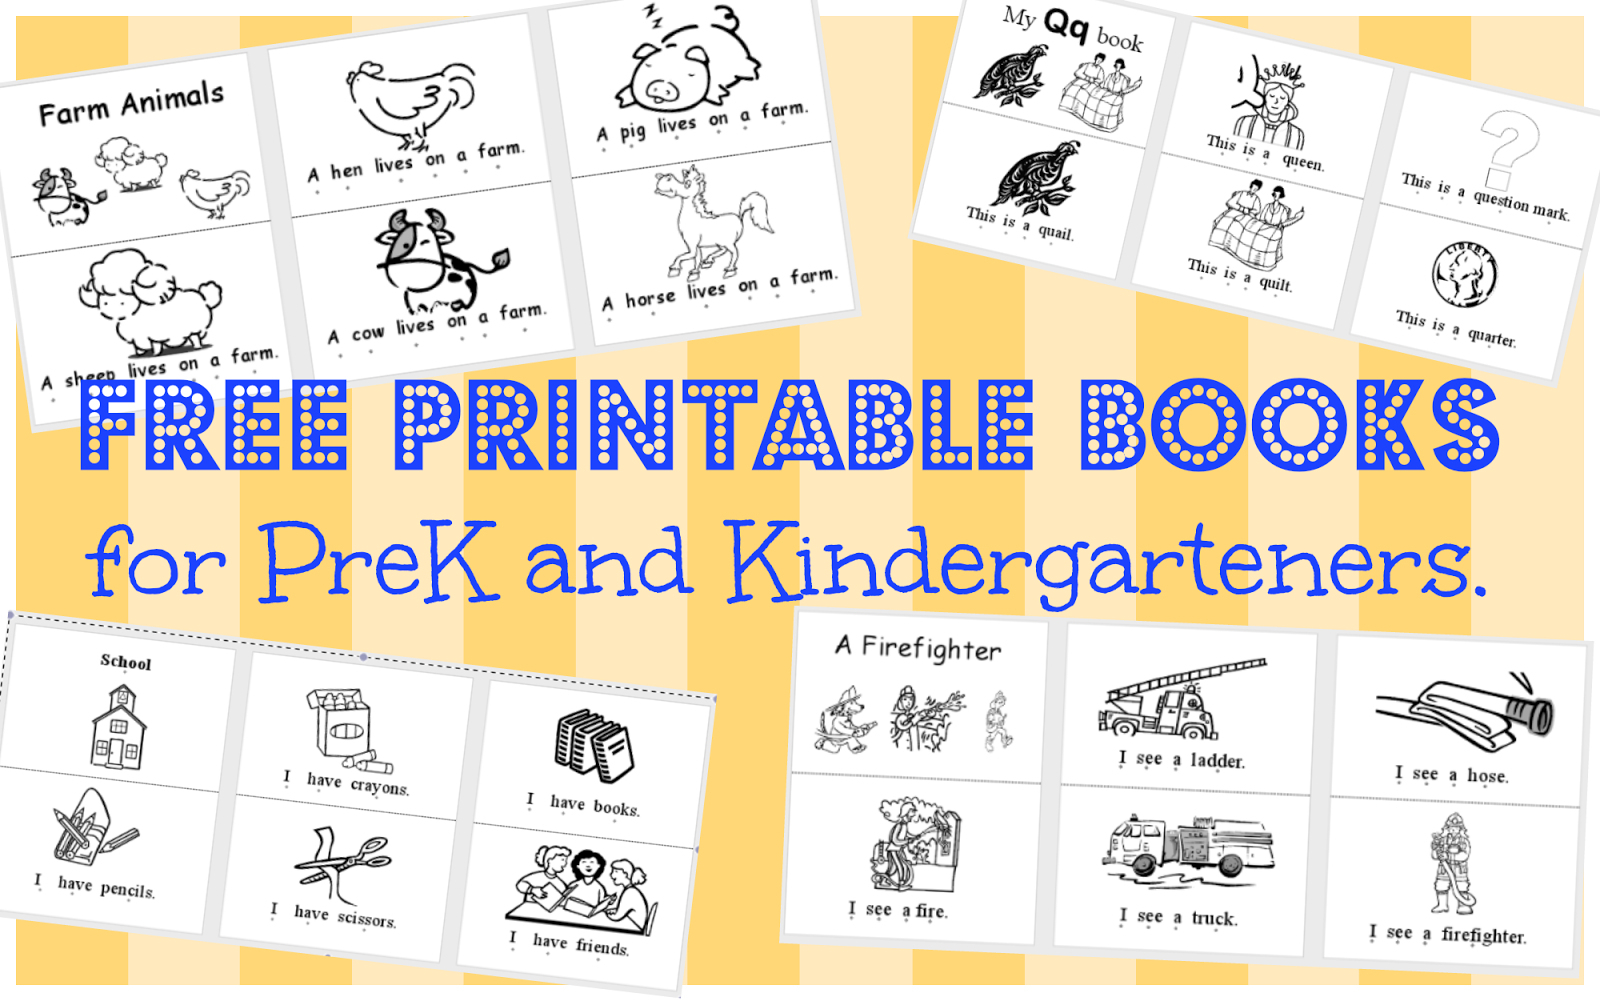 Free Printable Booklets For Preschoolers Printable Alphabet Booklets - Free Printable Stories For Preschoolers